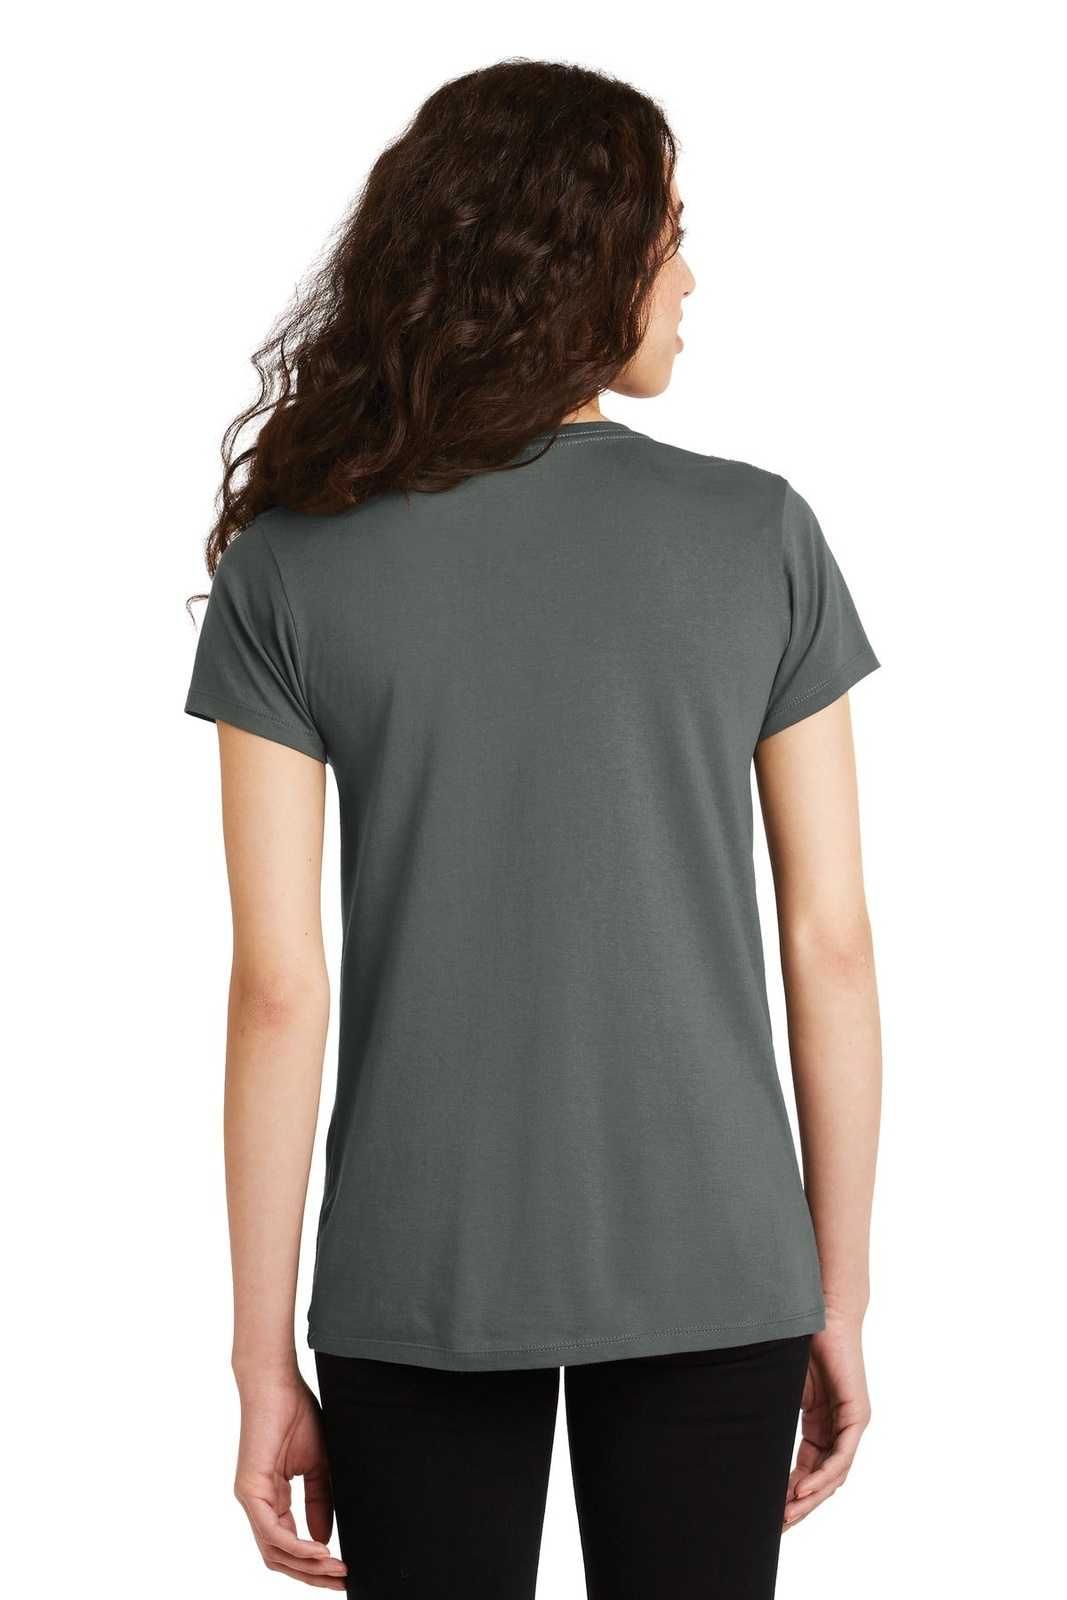 Alternative AA9073 Women's Legacy V-Neck T-Shirt - Asphalt - HIT a Double - 1